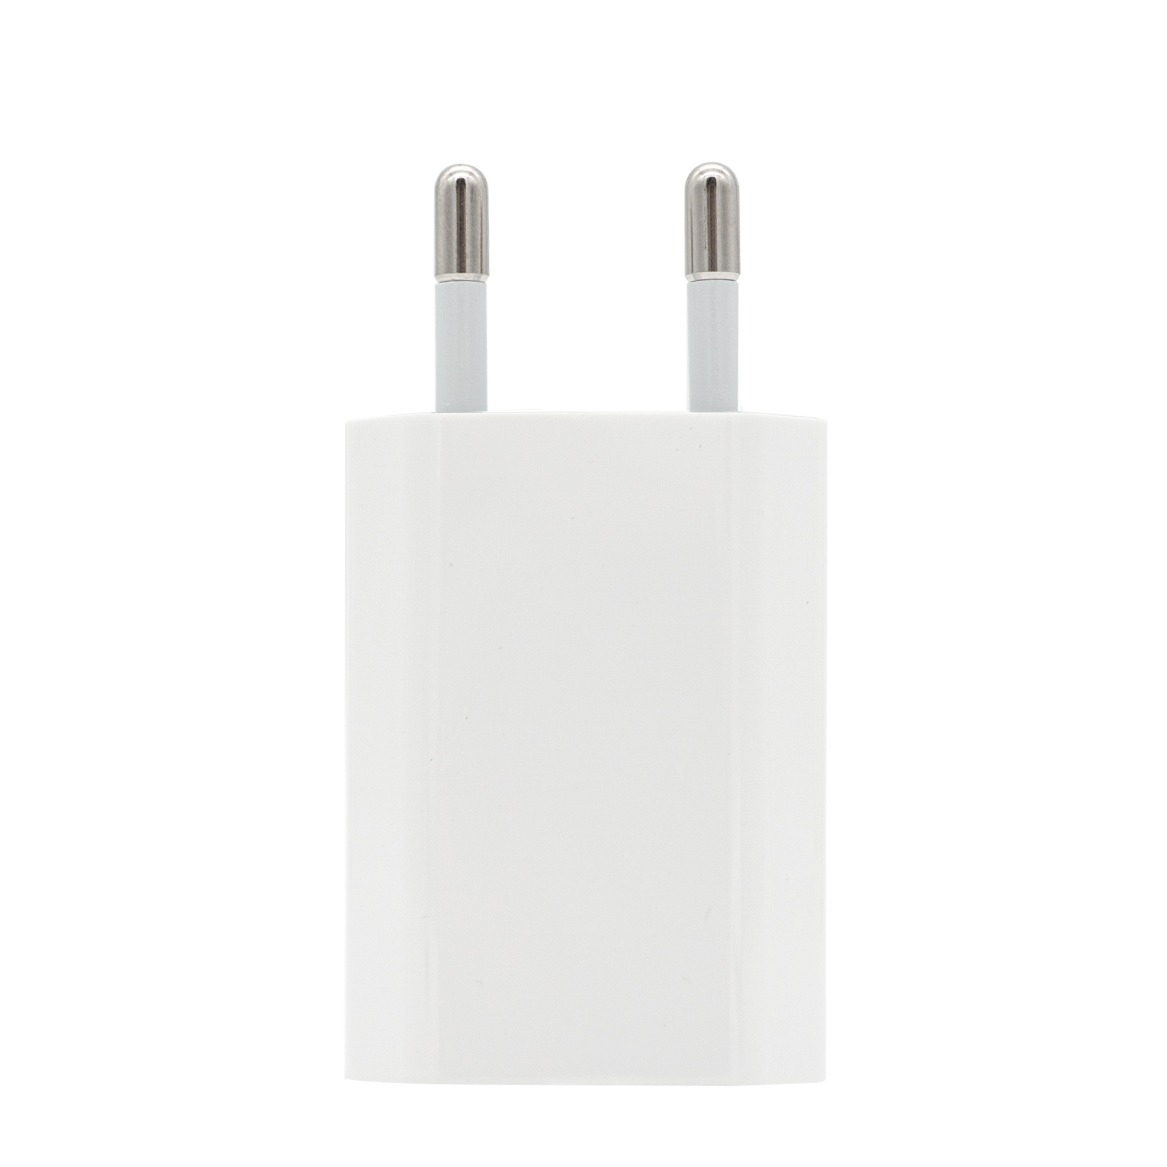 Image of Apple - iPhone X Ladegerät / USB Netzteil 5W A1400 MD813ZM/A - Weiss bei Apfelkiste.ch